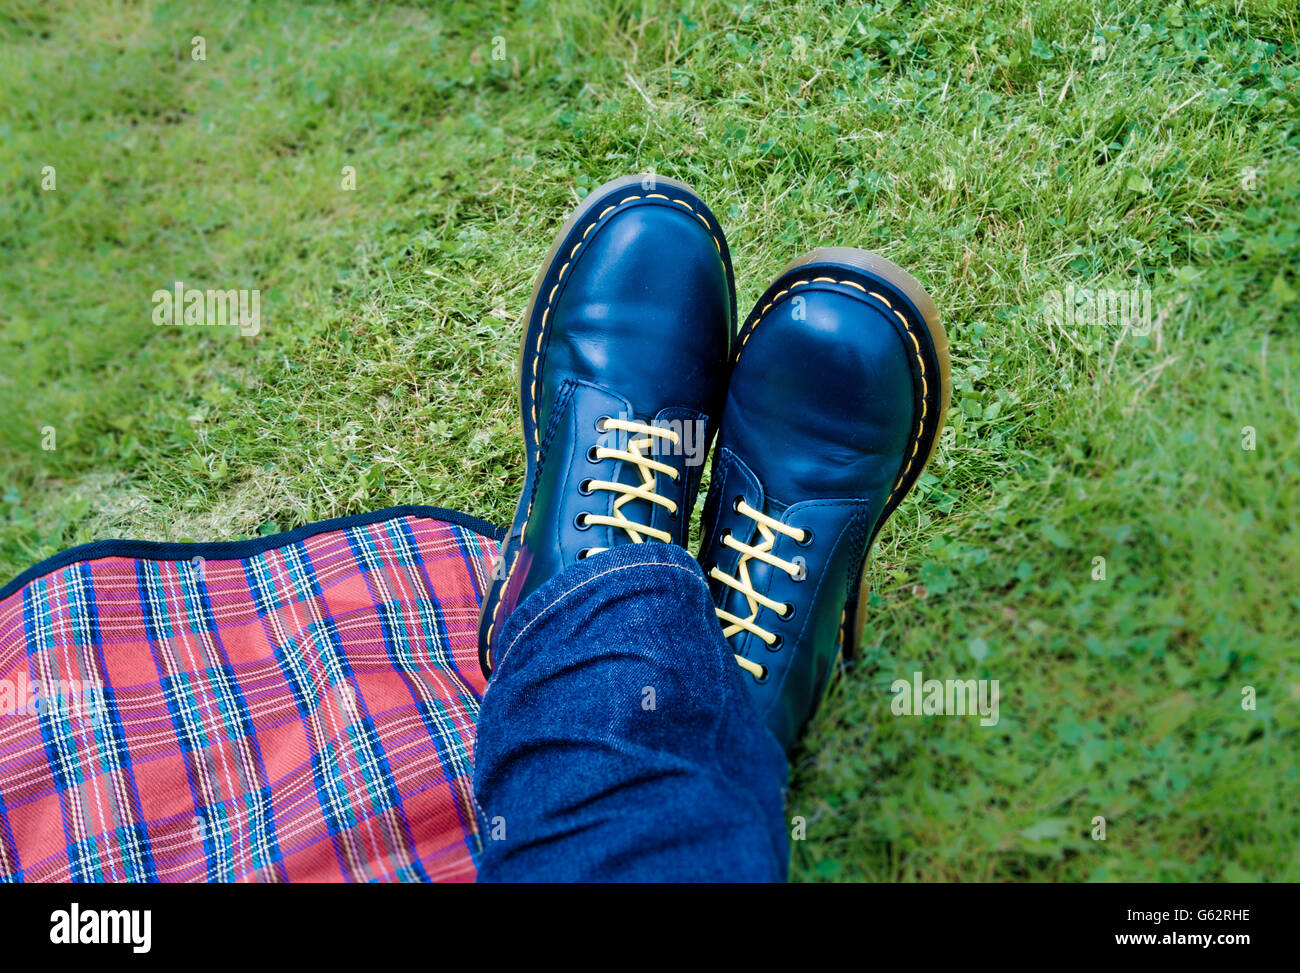 Füße mit blauen Dr Marten Stiefel und rot karierten Picknickdecke auf Rasen  Stockfotografie - Alamy